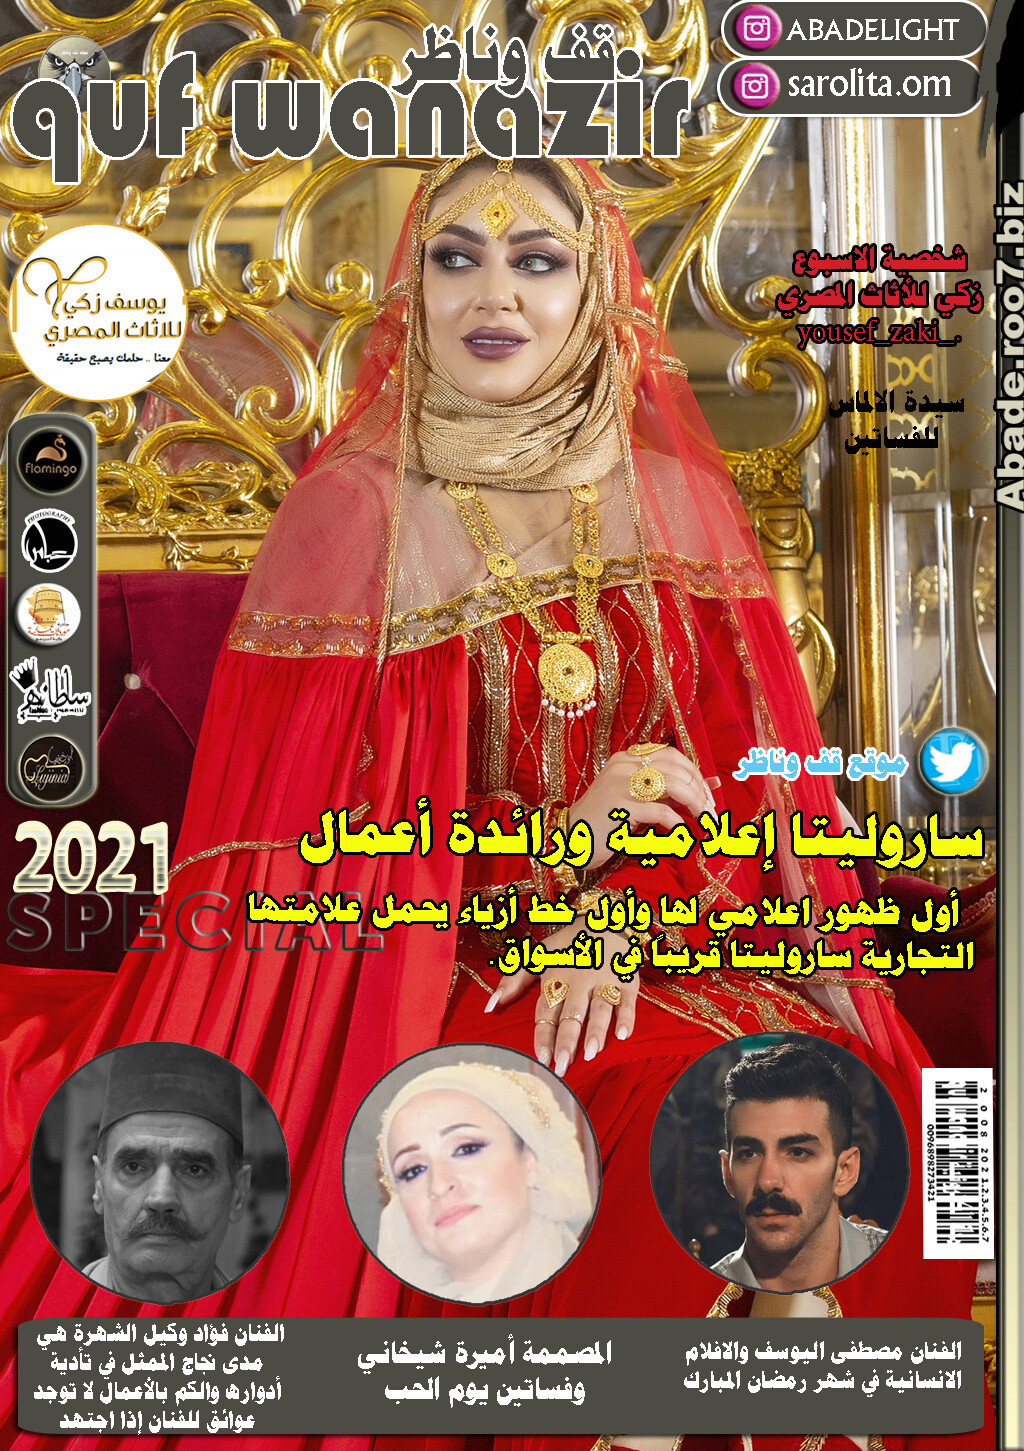 عمان - مجلة قف وناظر 2021 نجمة الغلاف ساروليتا Aa043